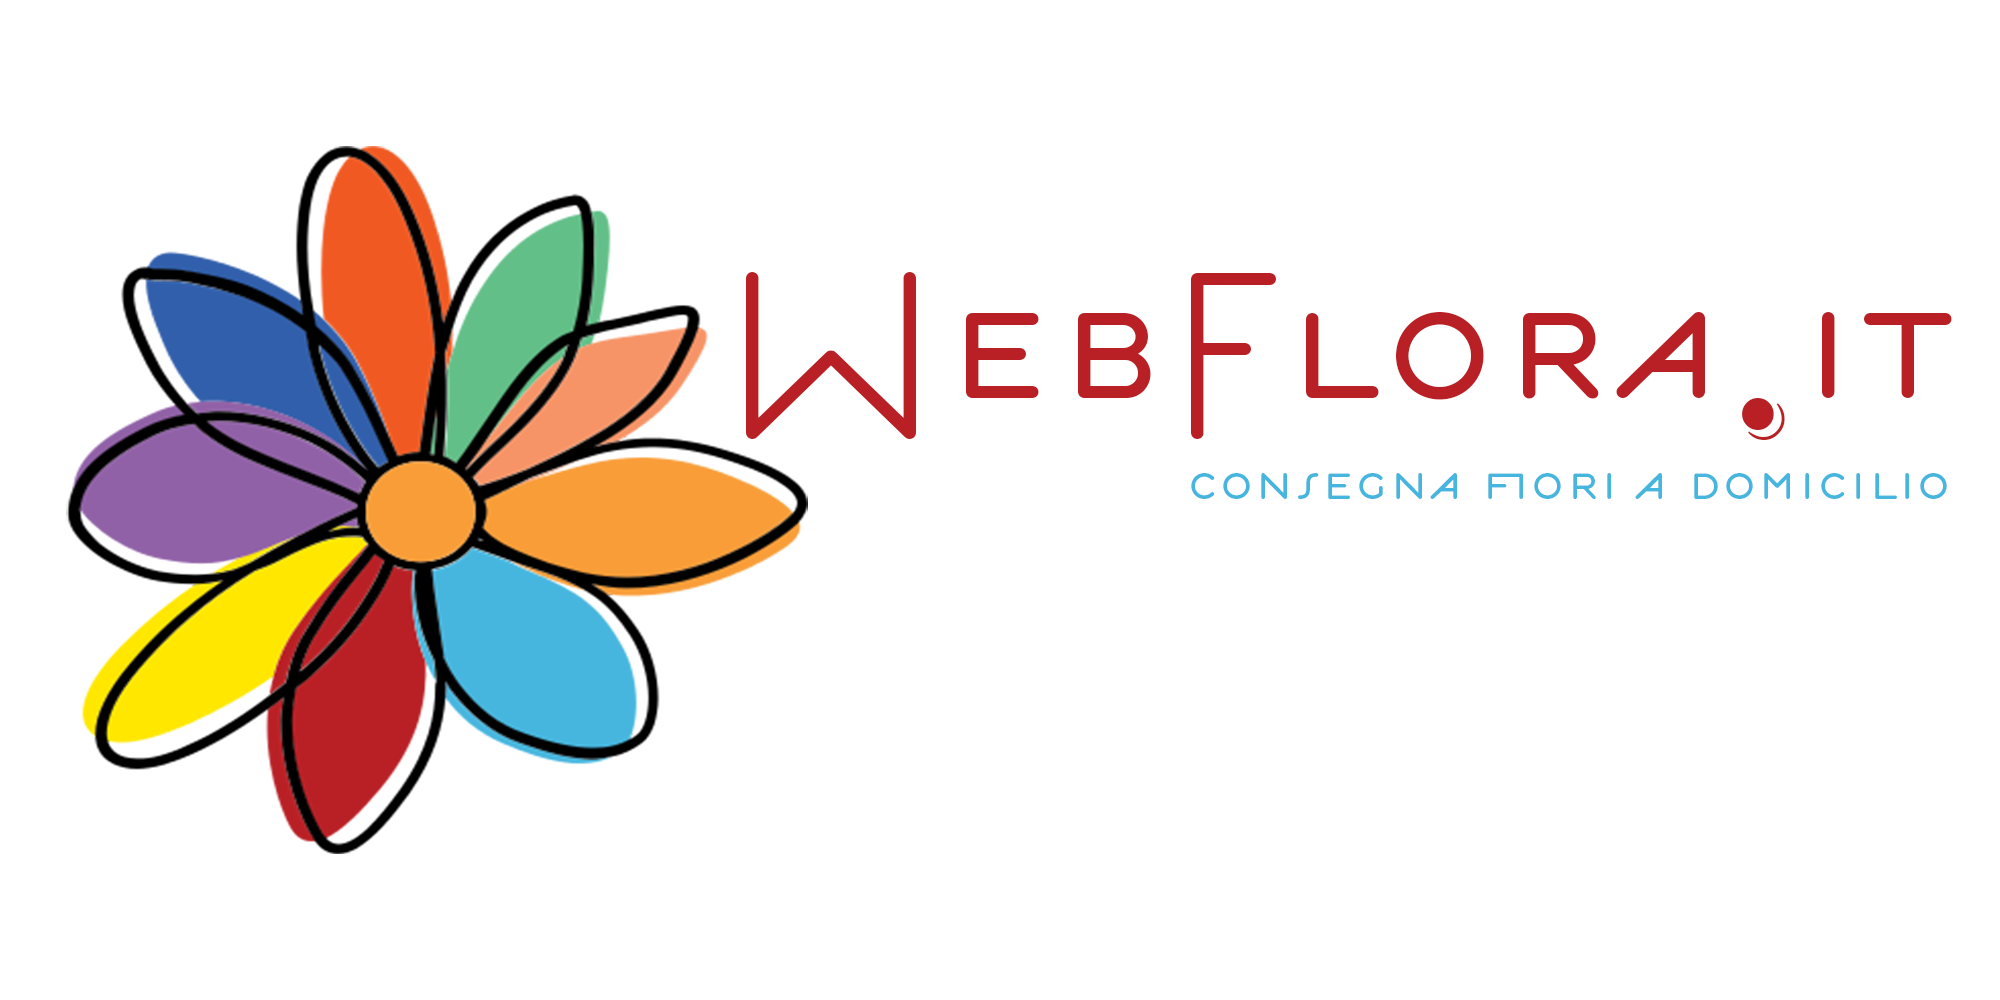 Webflora.it consegna fiori a domicilio